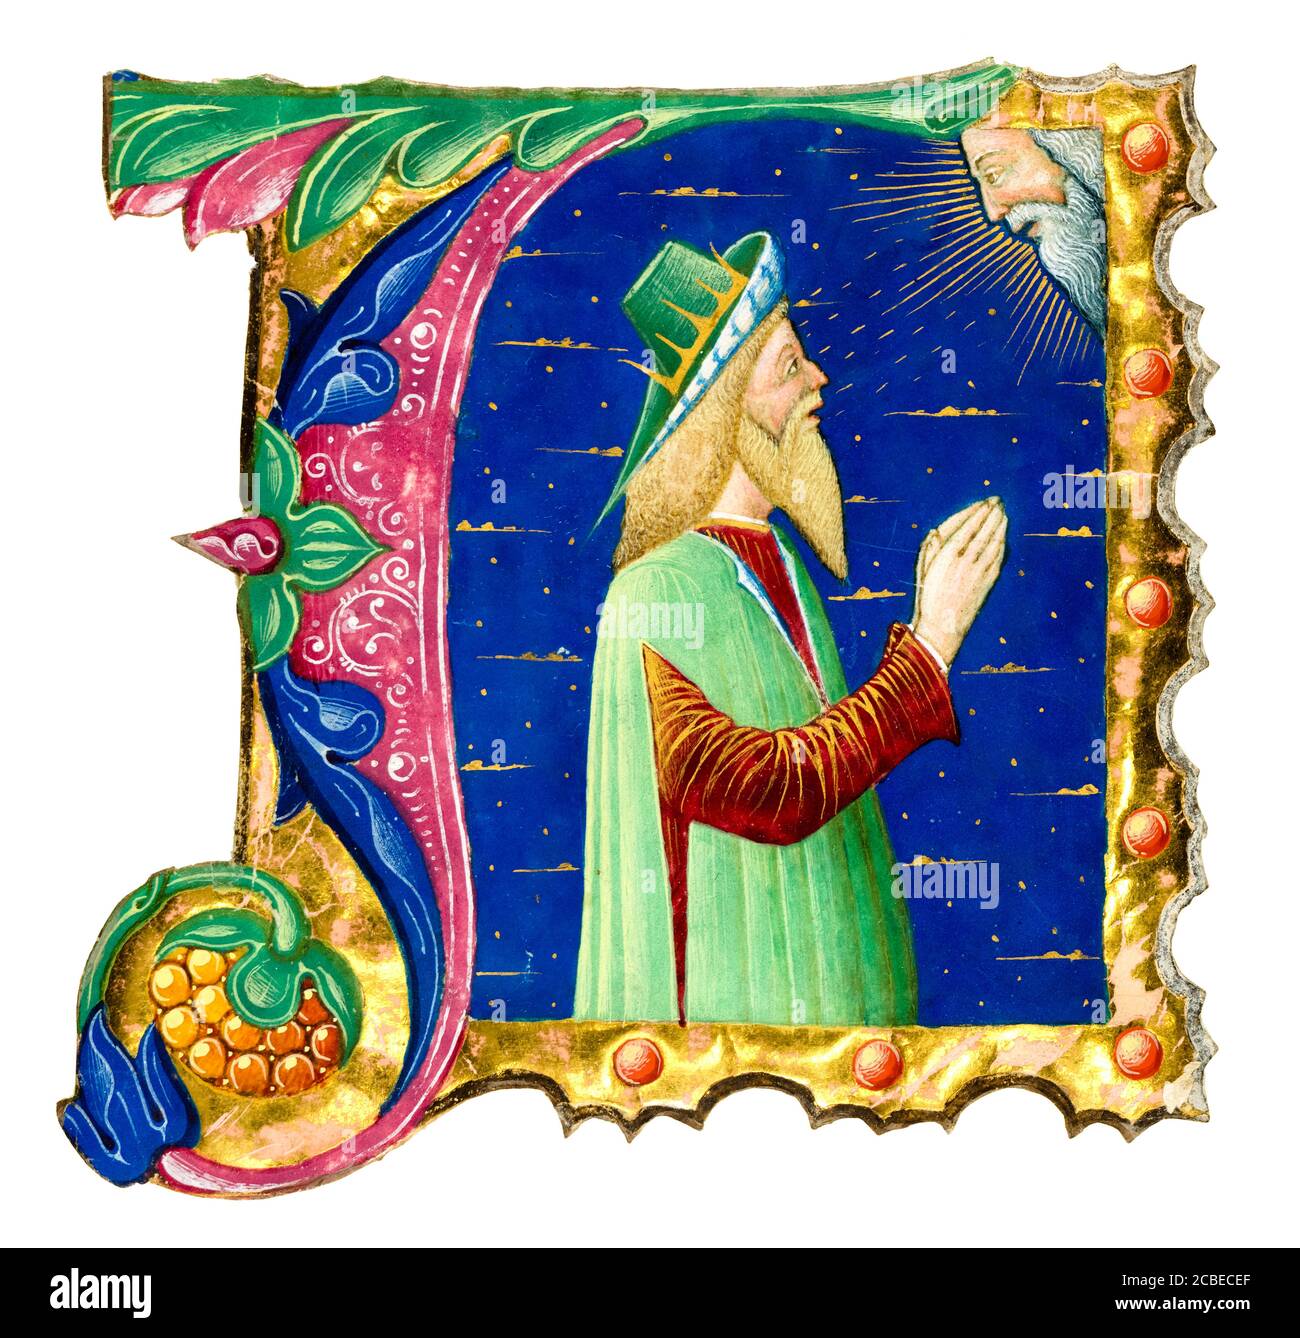 Initial A da un libro corale del XV secolo con il re Davide in preghiera, manoscritto illuminato di Guglielmo Giraldi del Magri, intorno al 1470-1480 Foto Stock